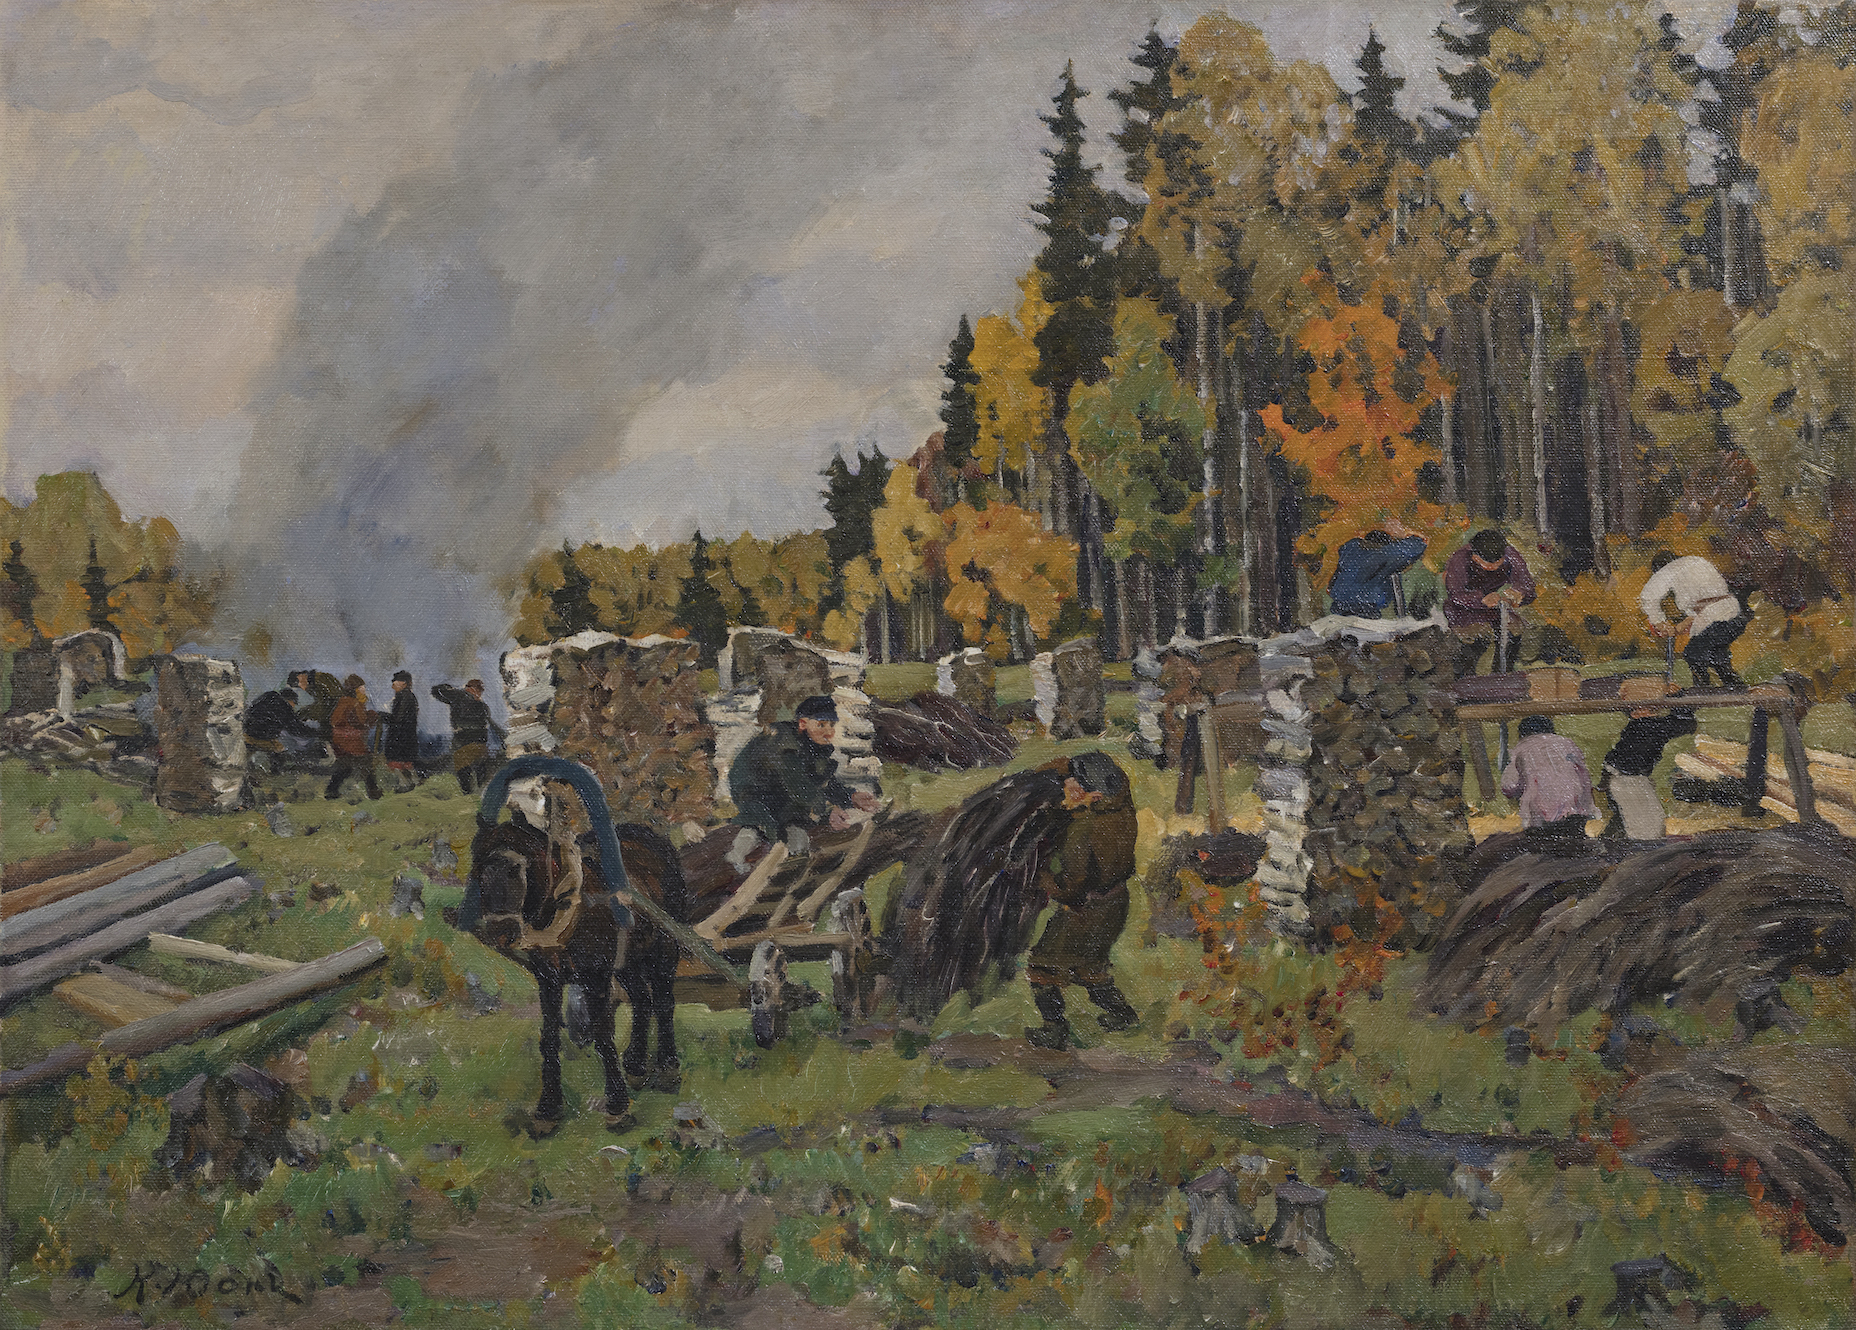 Working in the Forest. Autumn, Ligachevo, c. 1913